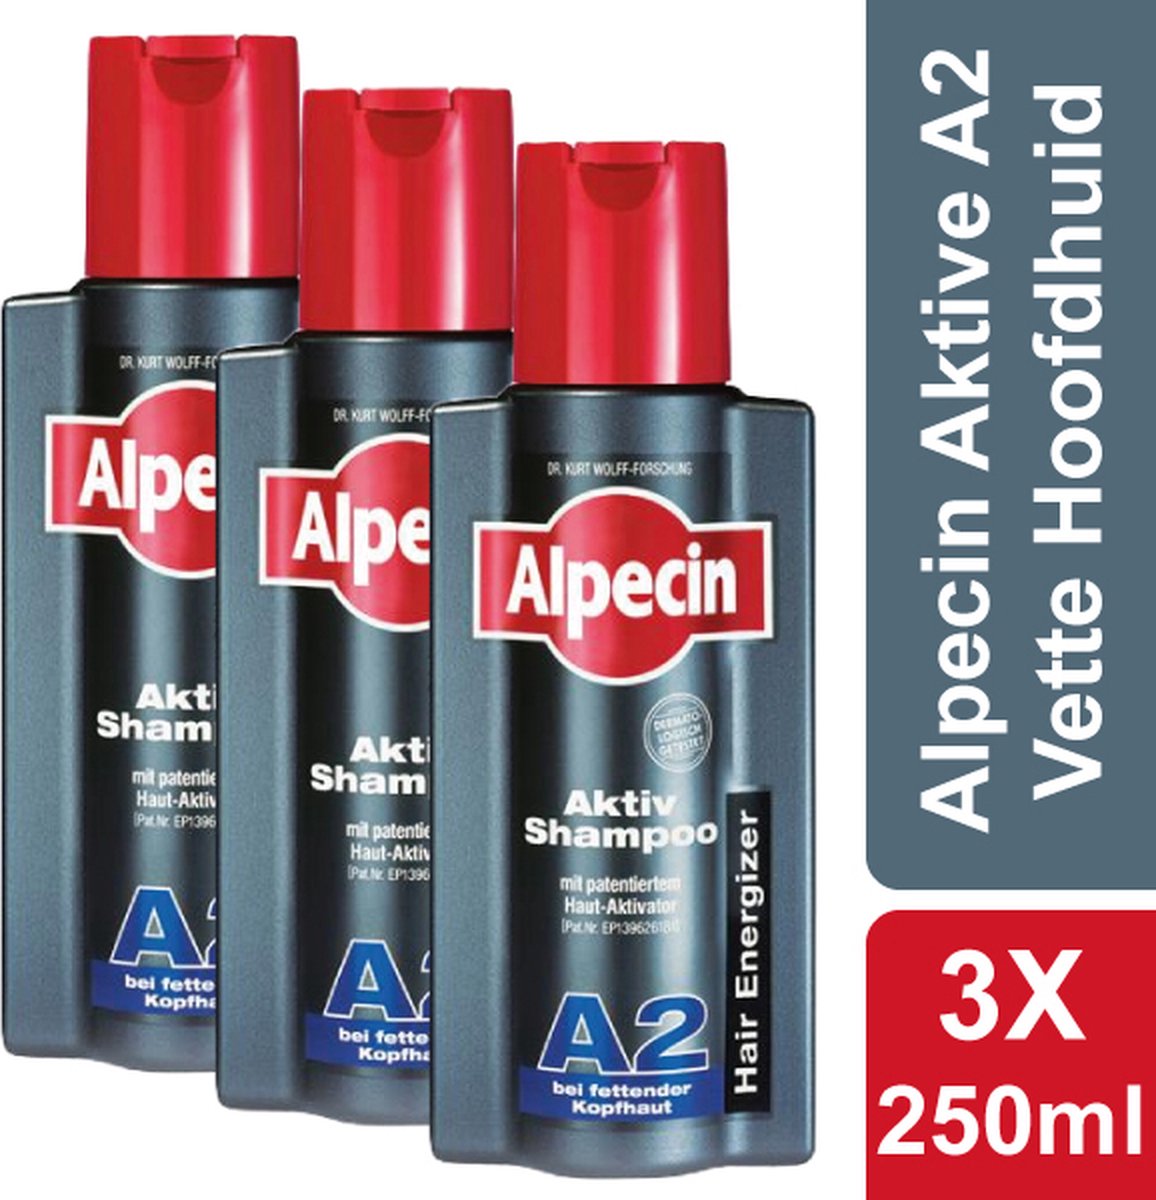 Alpecin Active Shampoo A2 - Voordeelverpakking 3x 250ml - Vermindert Vette Hoofdhuid - Hair Energizer - Voor Alle Haar en Hoofdhuid Types